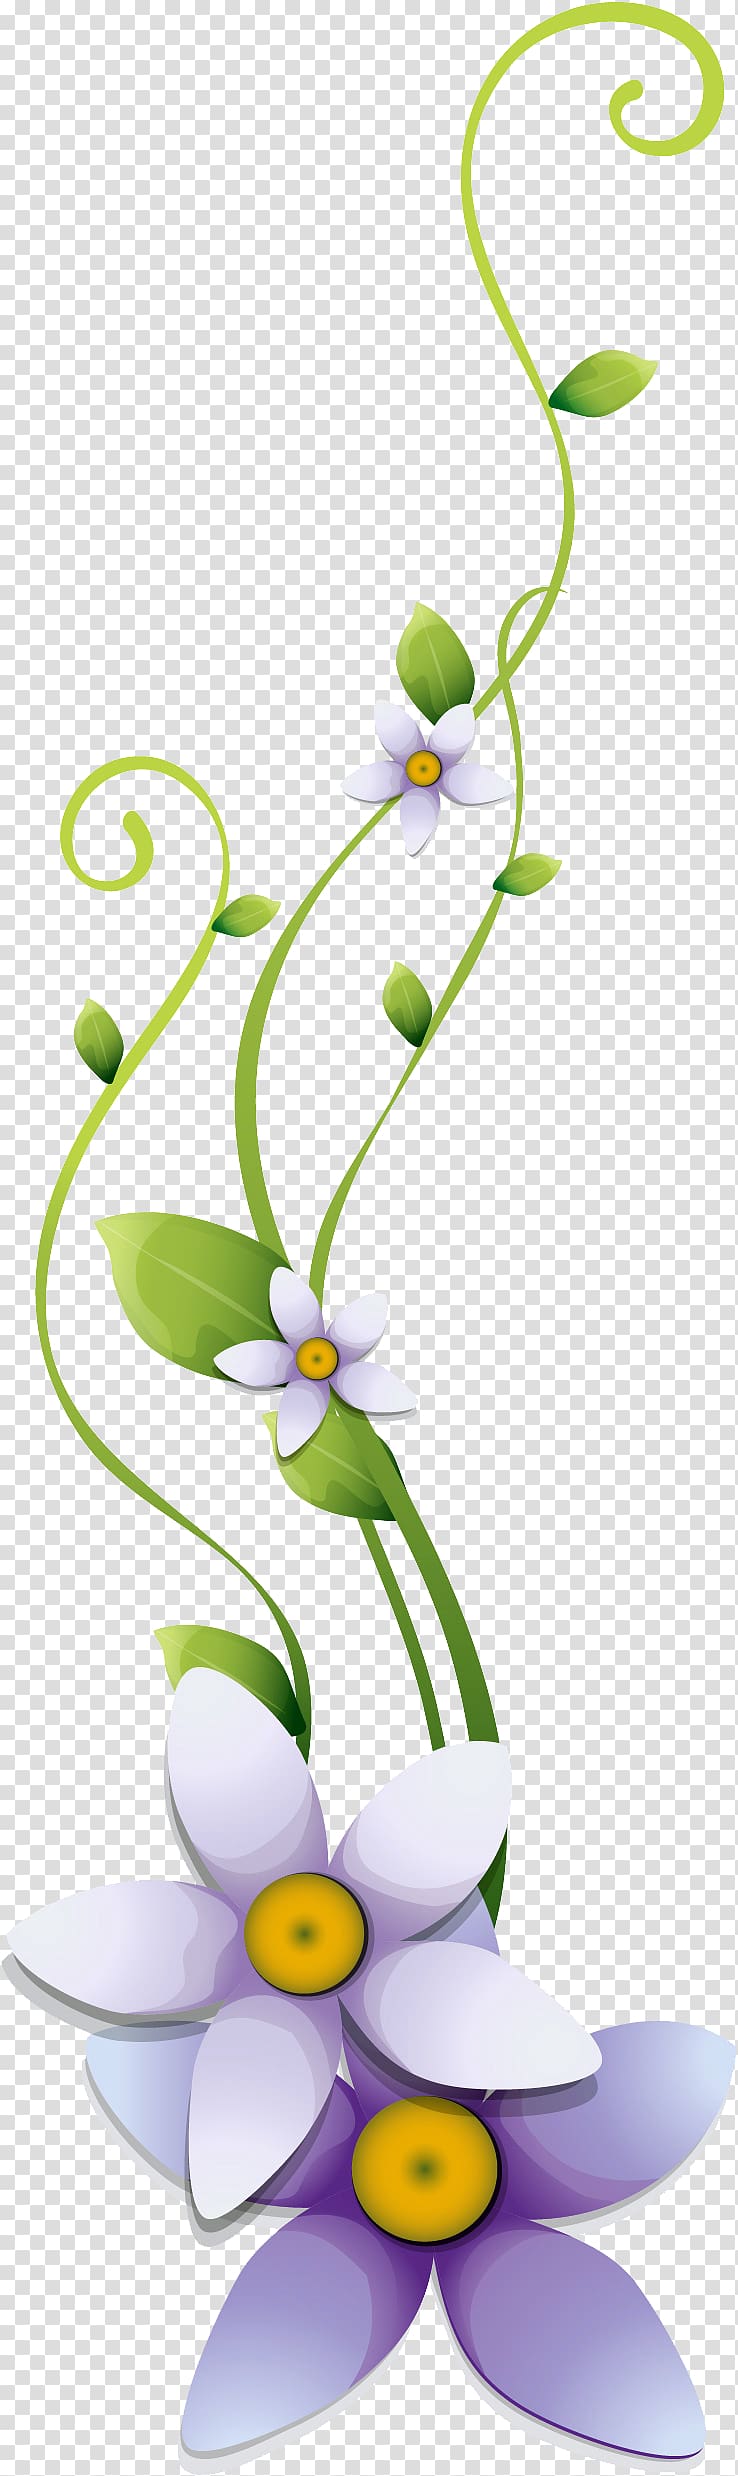 Cut flowers Floral design Art Flower bouquet, flower design transparent background PNG clipart